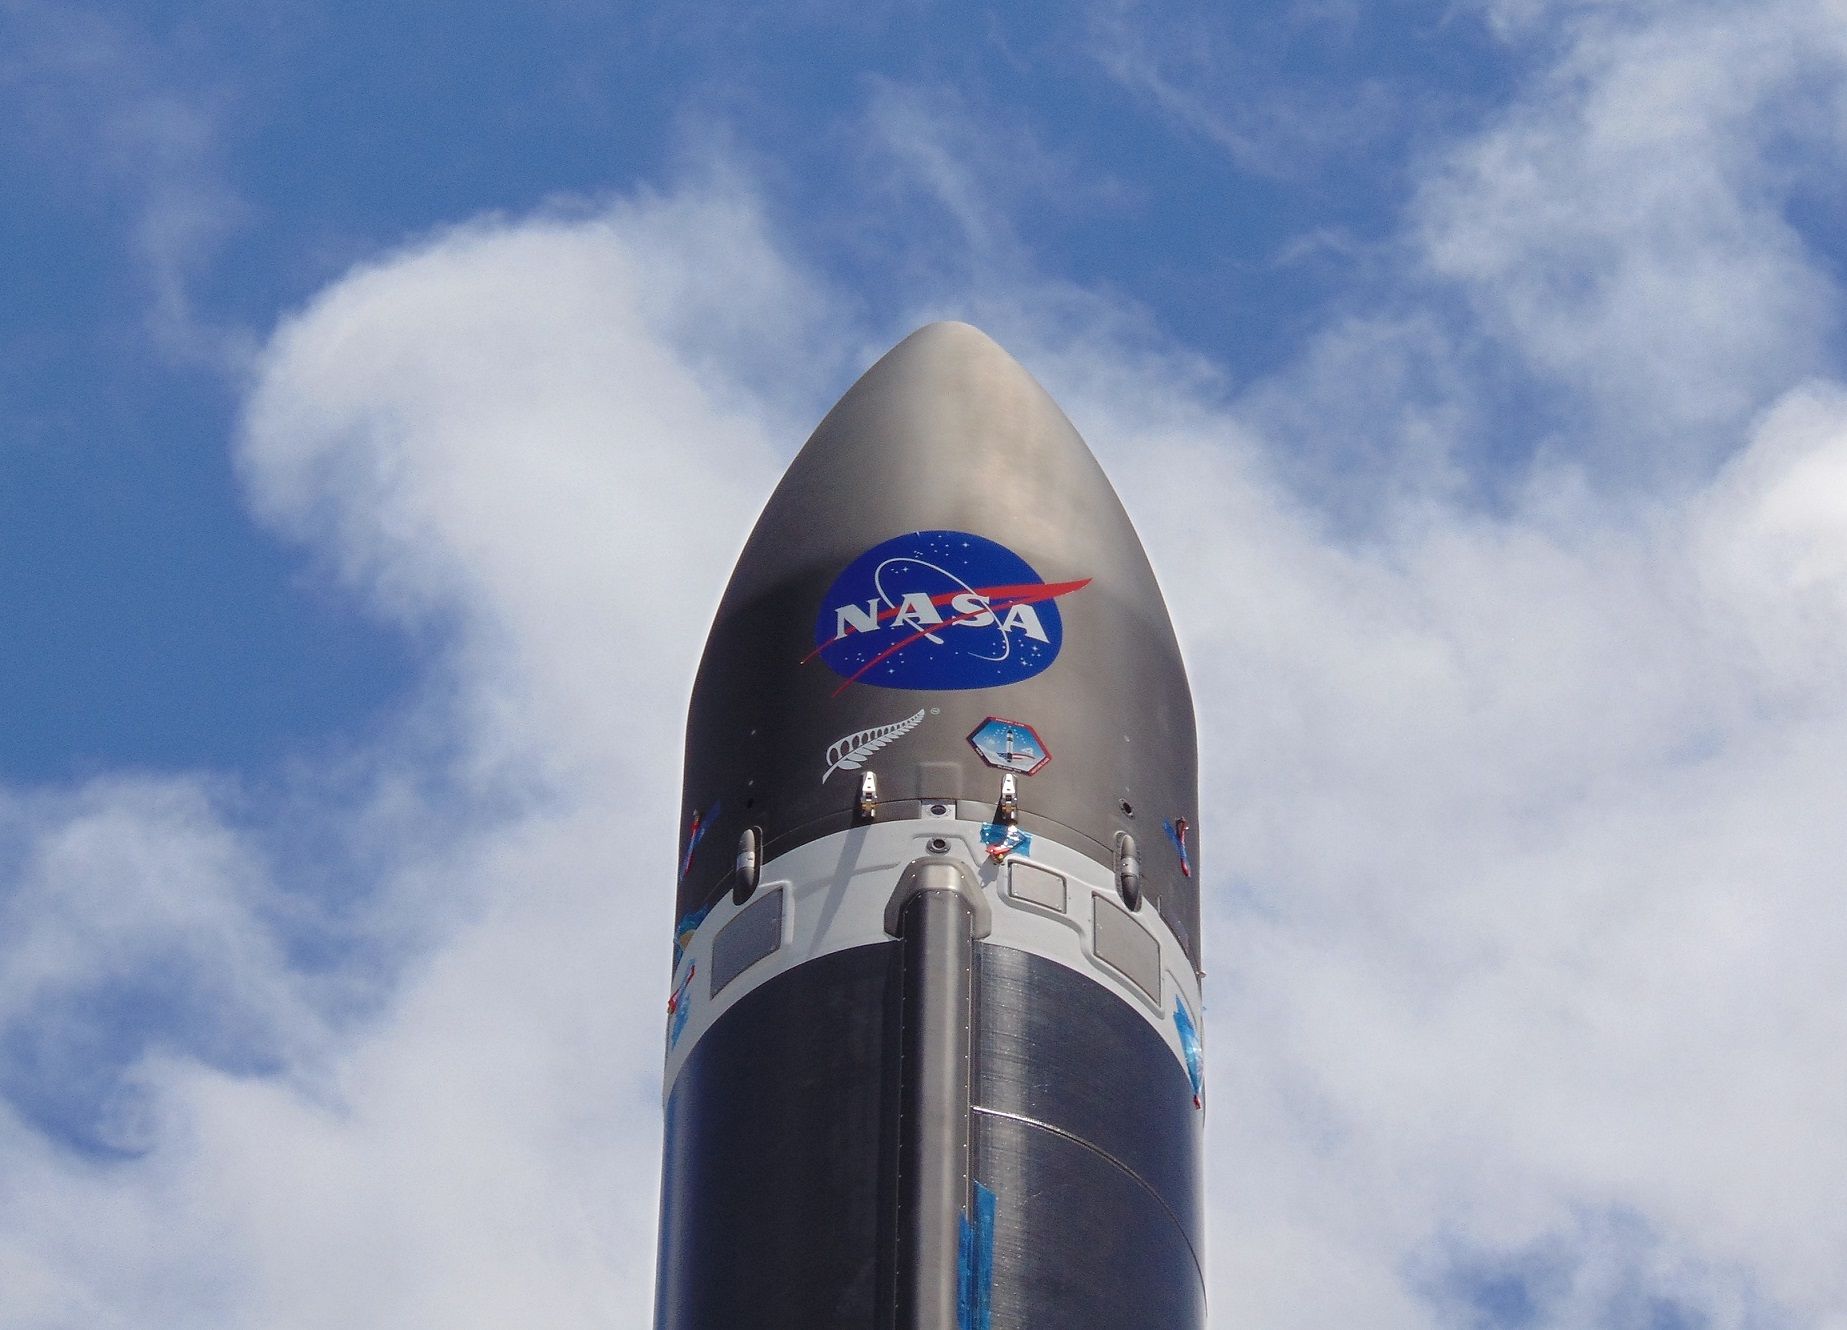 A NASA logo above a hypothetical VADR rocket design.